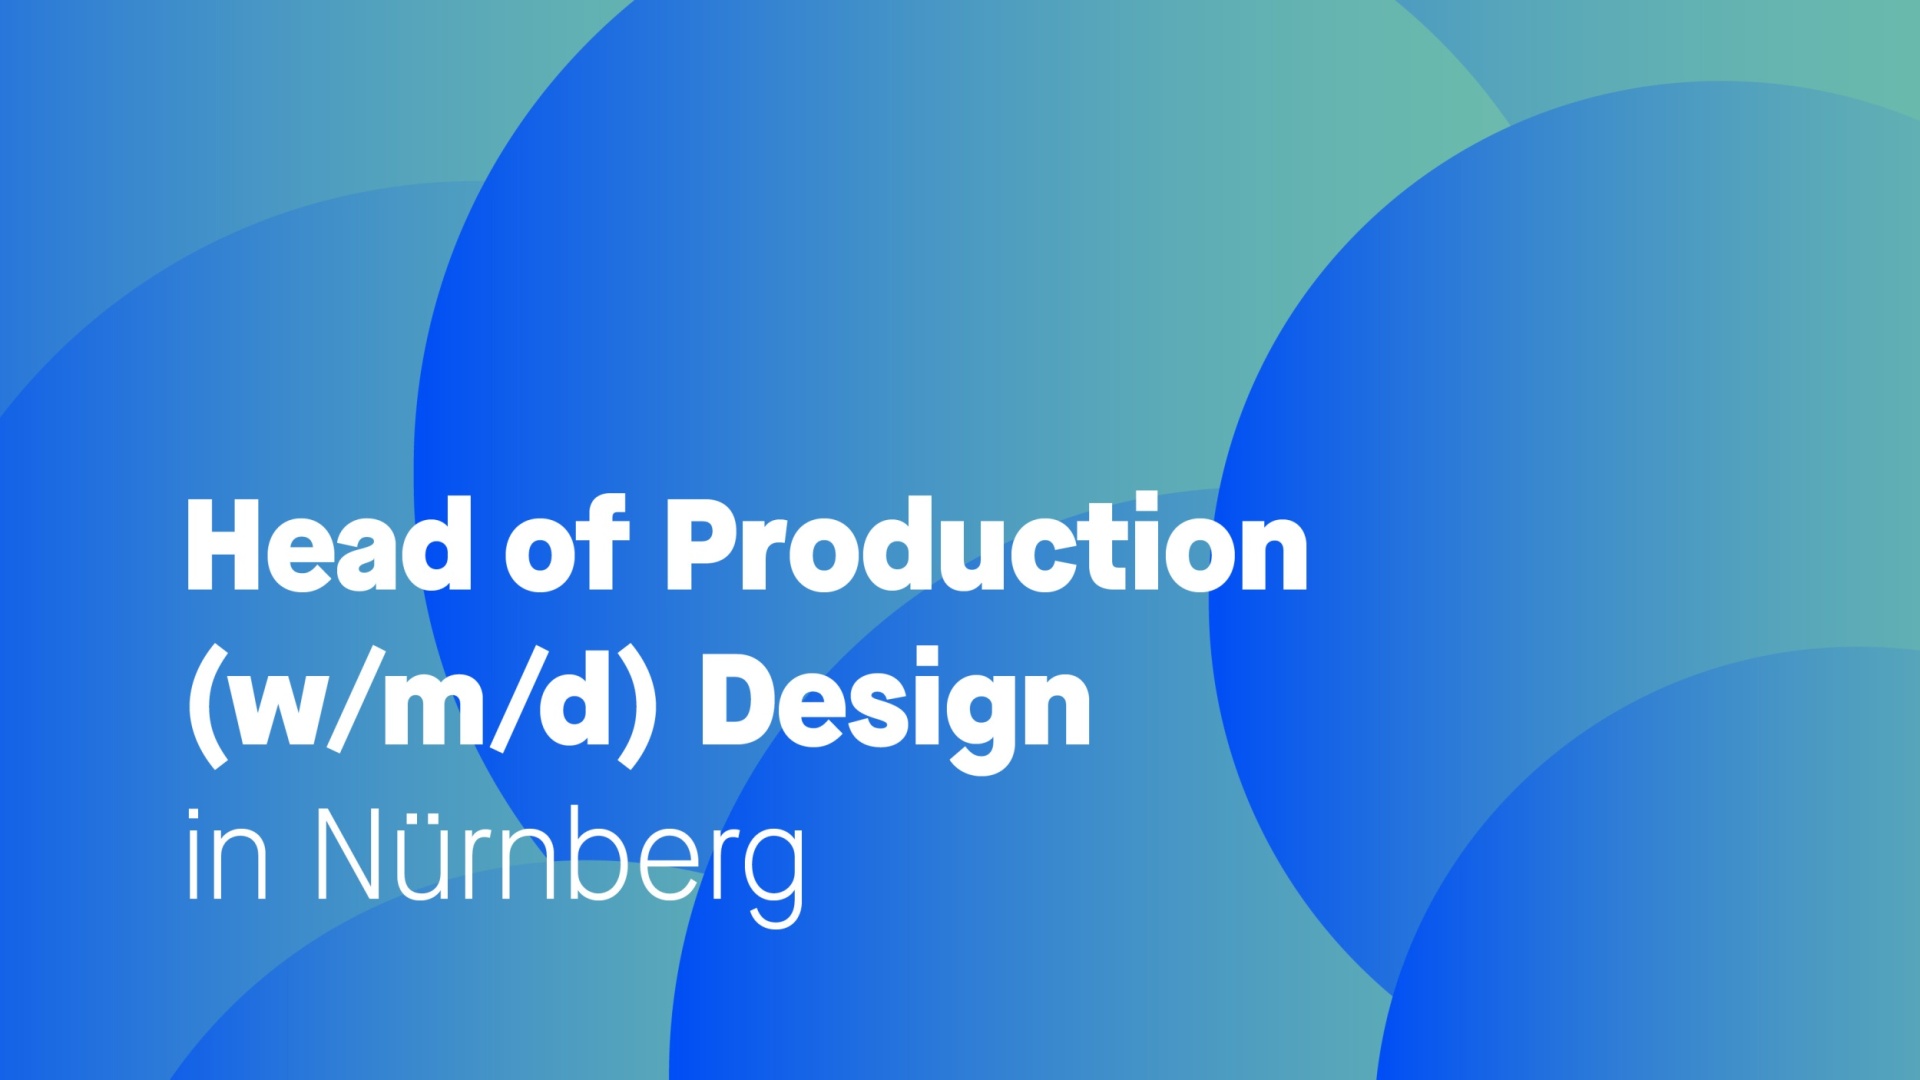 Head of Production (w/m/d) Design